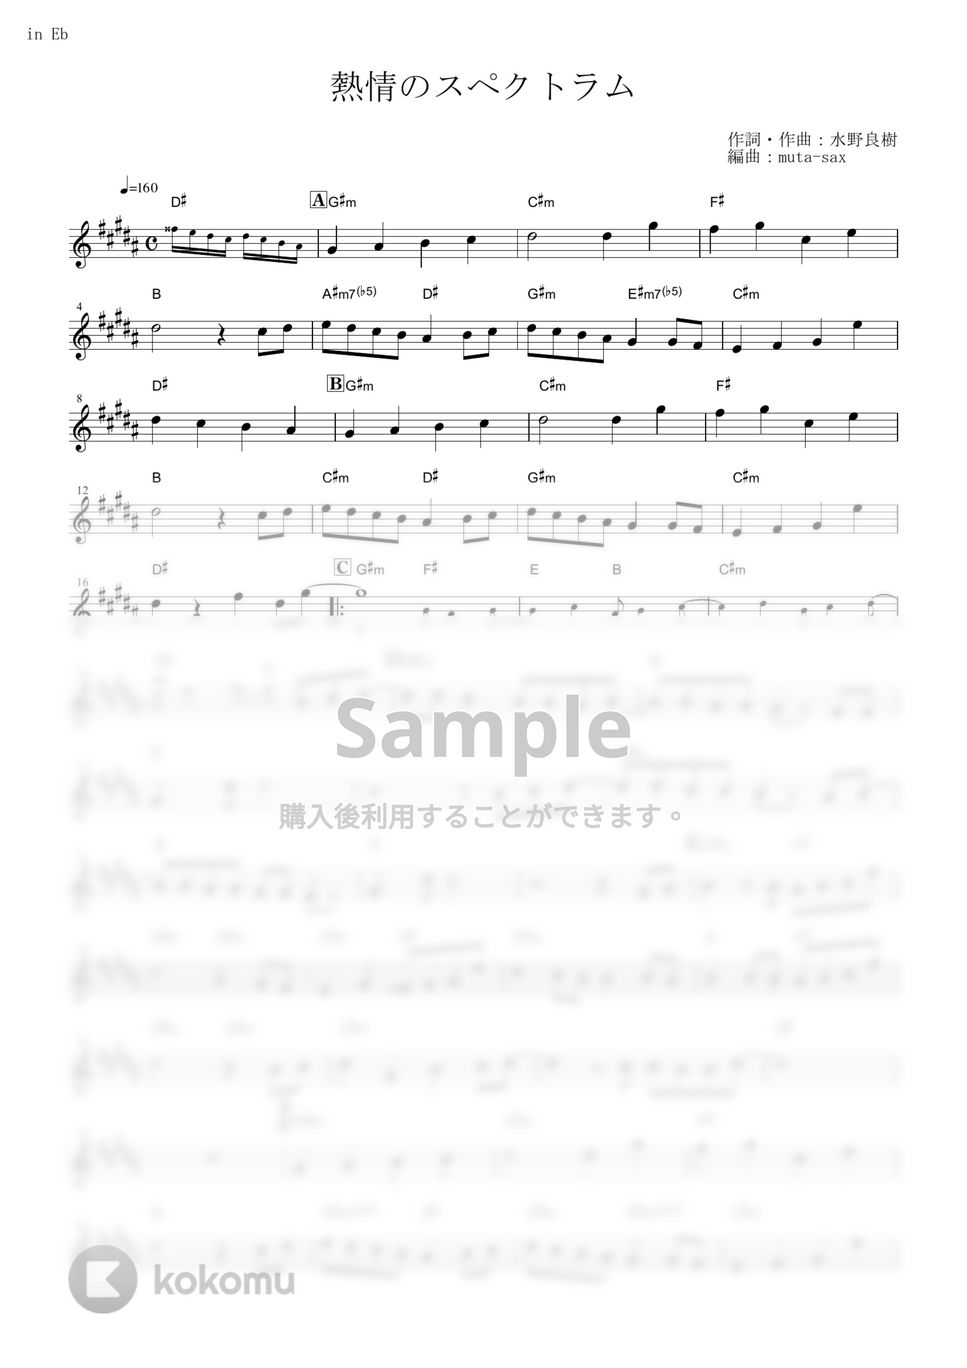 いきものがかり - 熱情のスペクトラム (『七つの大罪』 / in Eb) by muta-sax